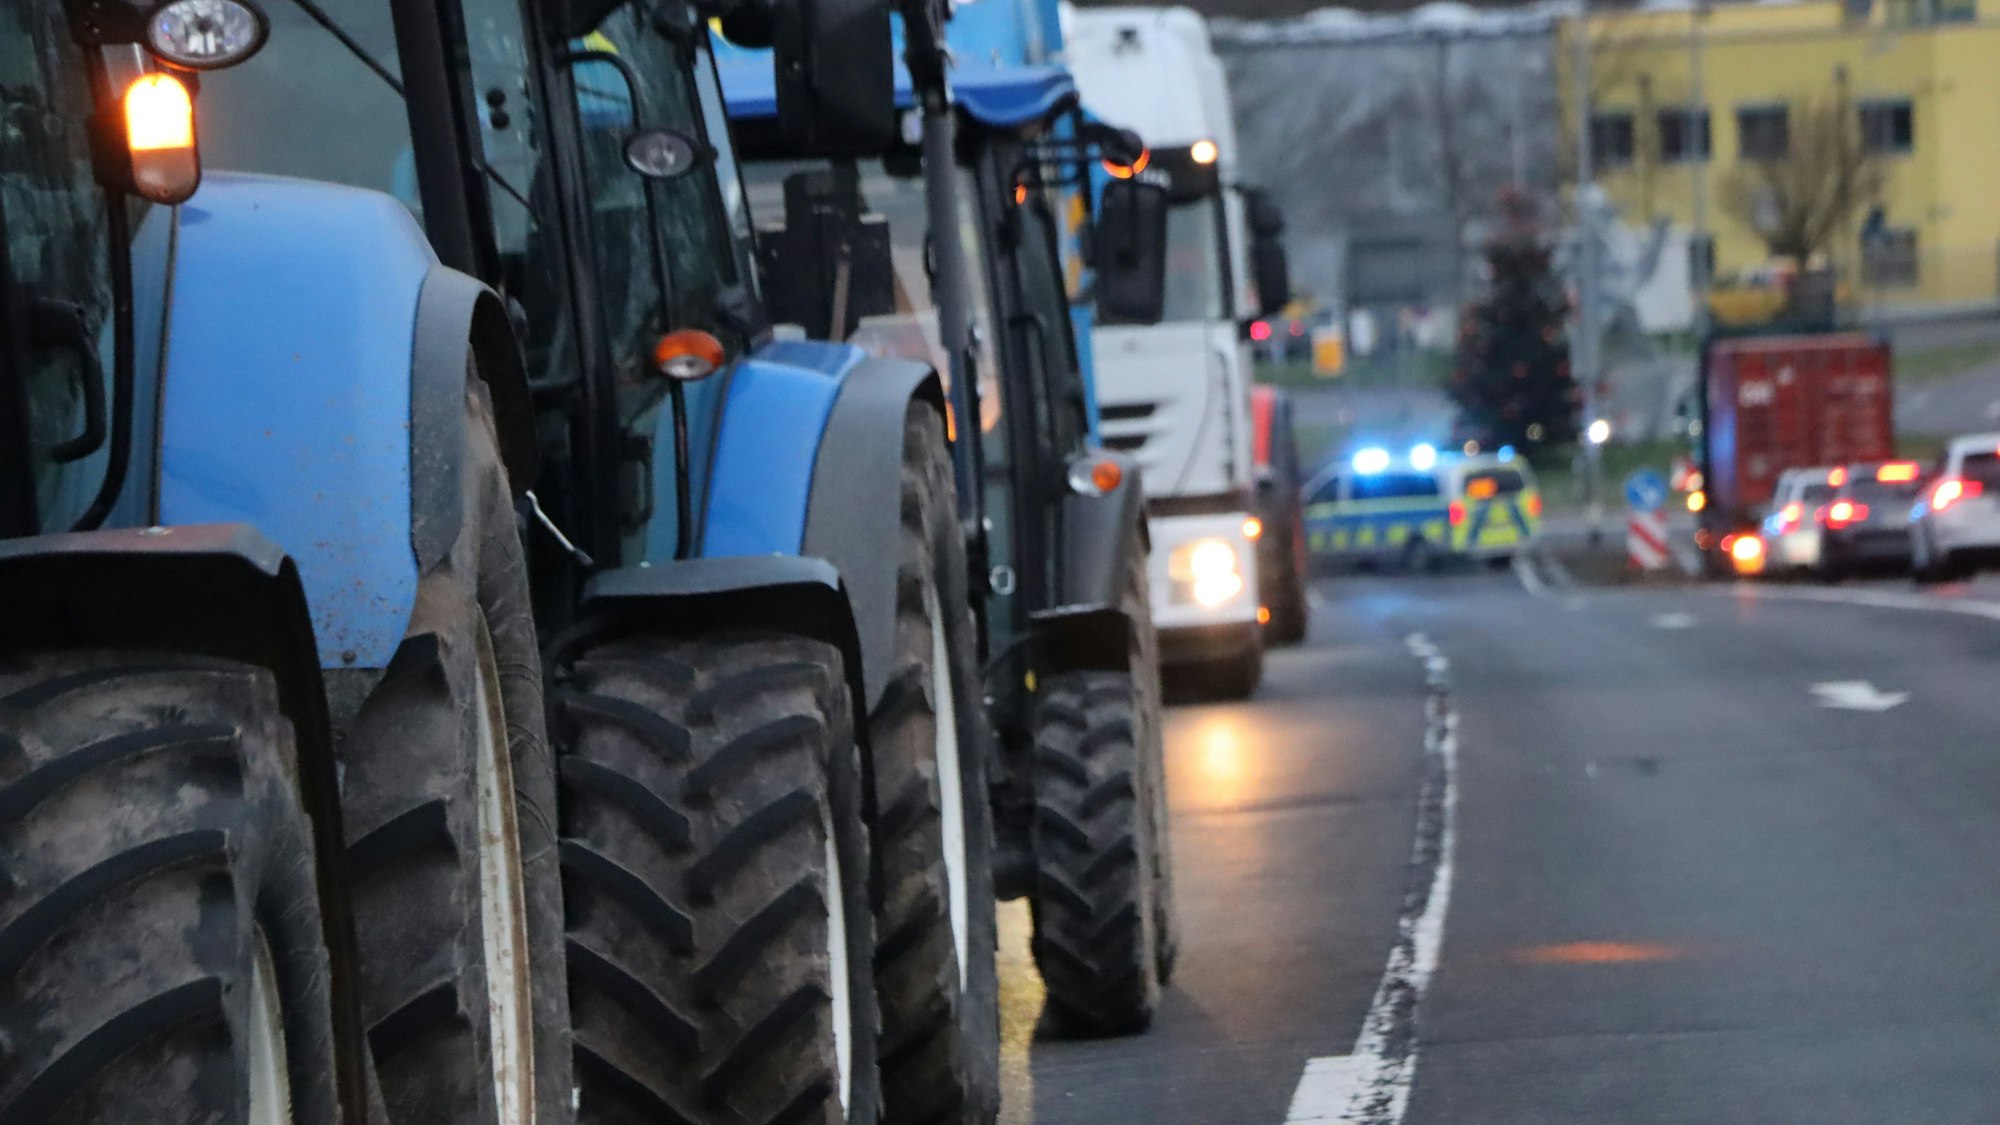 Auf dem Foto sind Traktoren zu sehen, dahinter Lkw und ein Polizeiwagen mit Blaulicht.